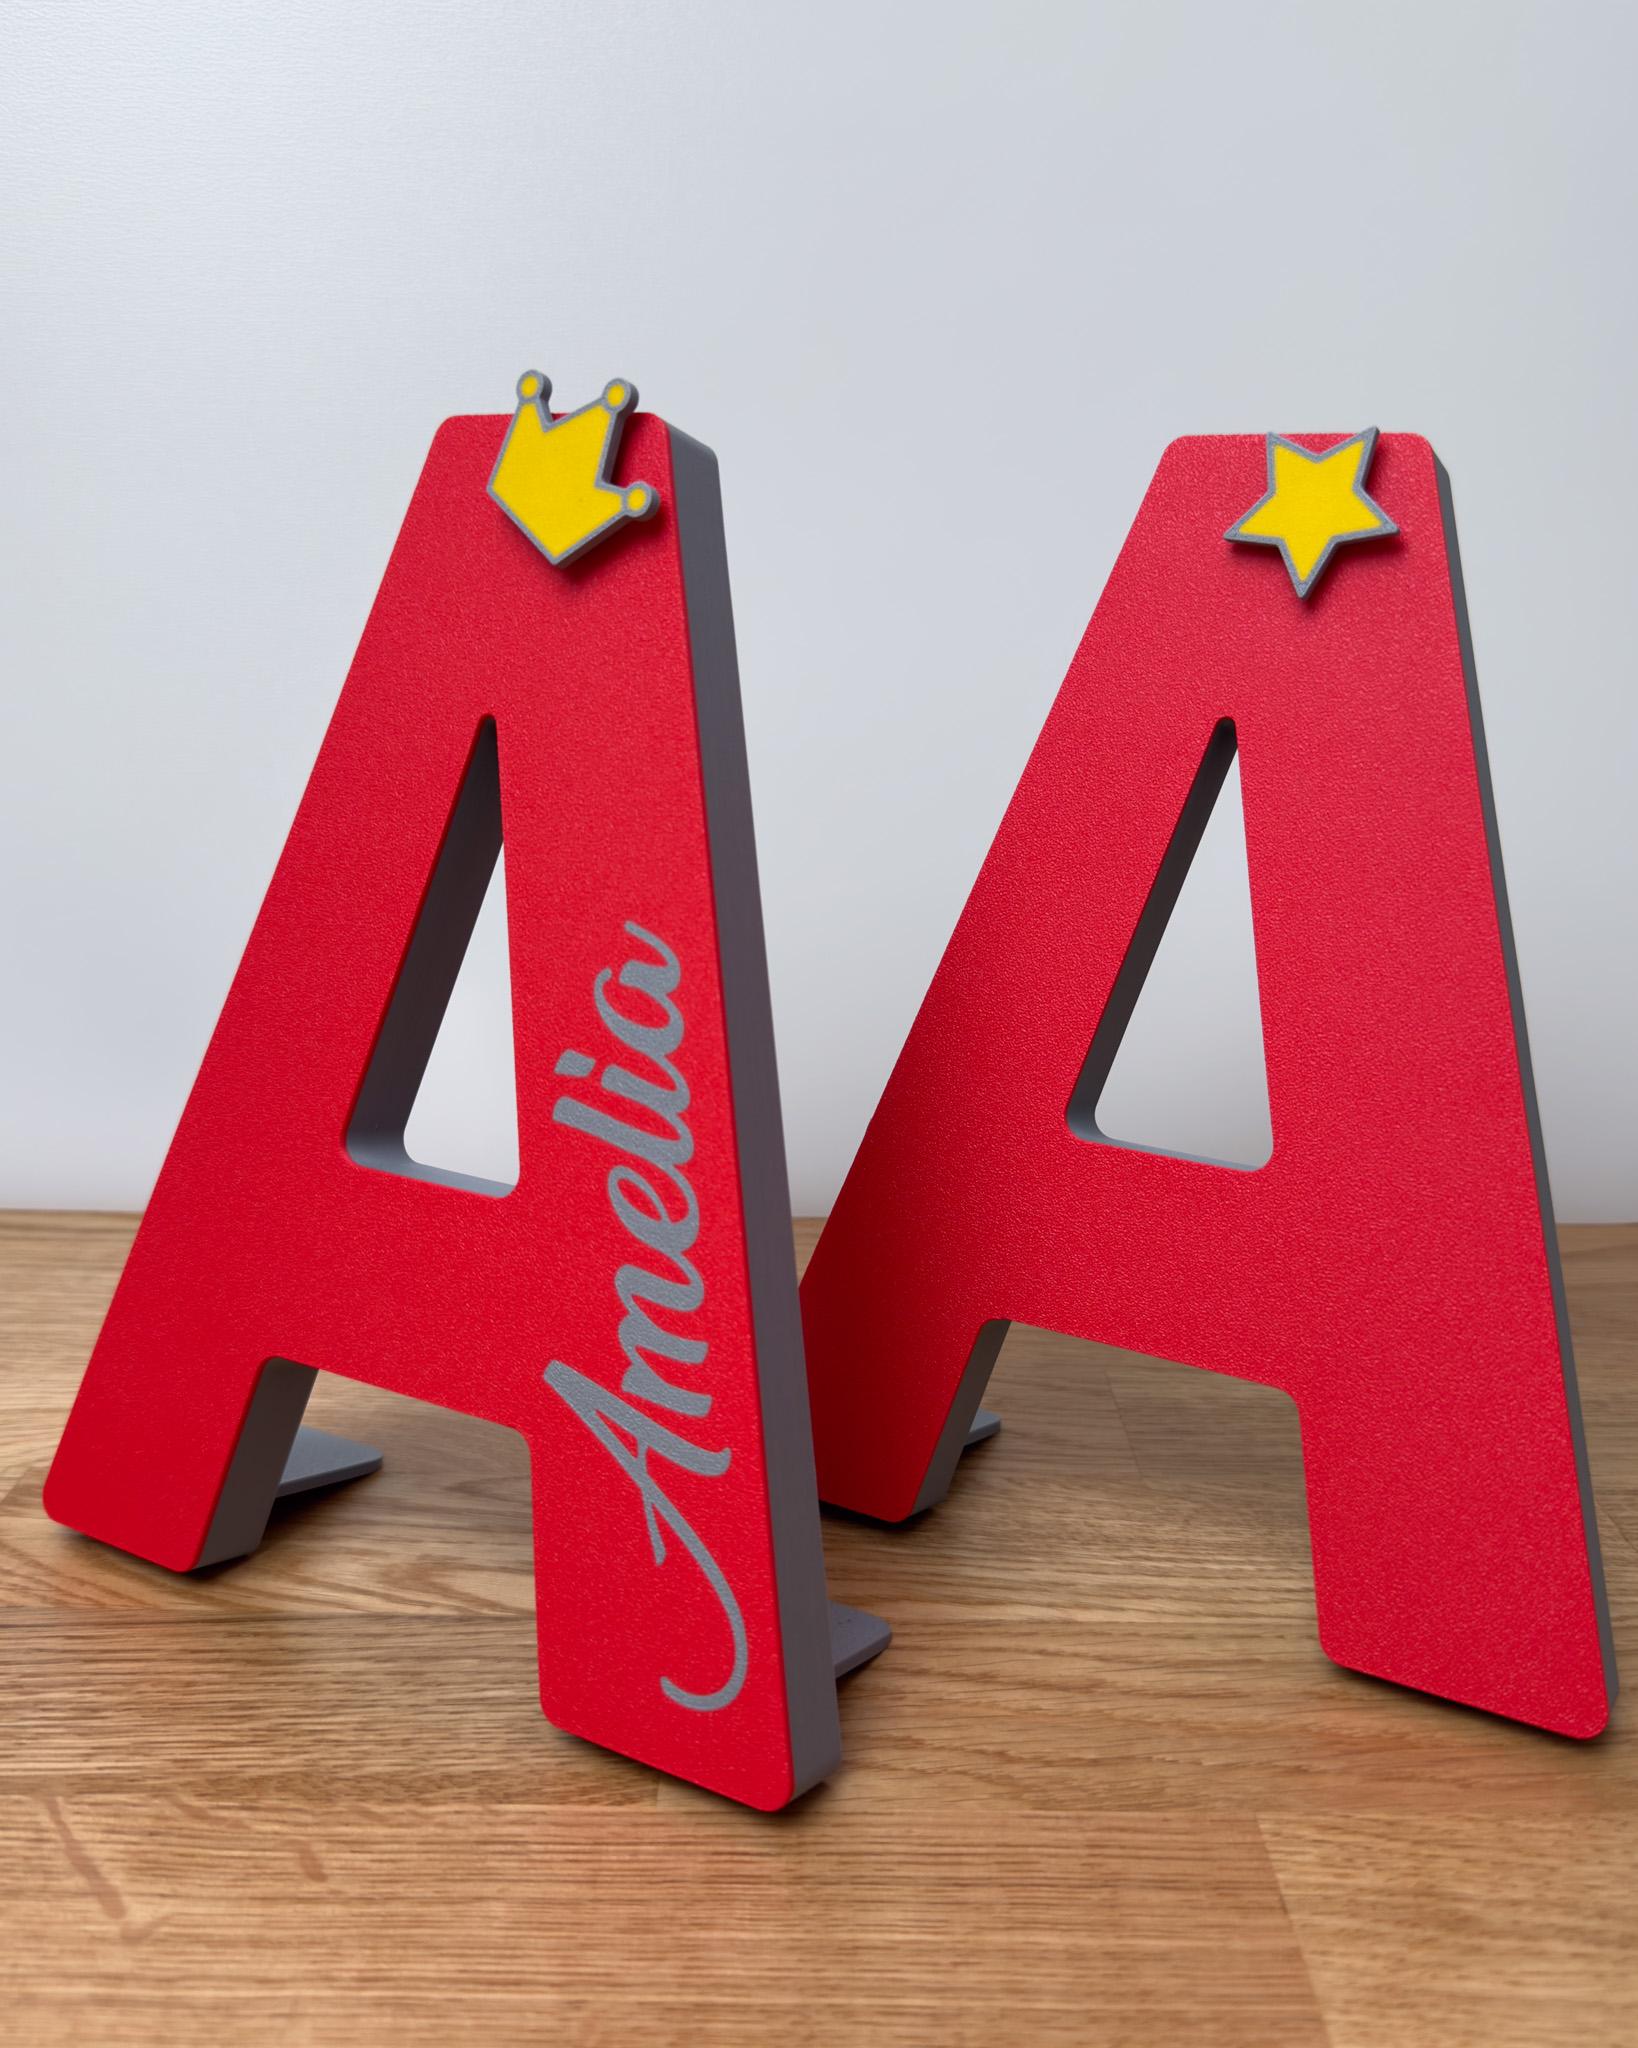 3D Letter M - by TeeTi3D 3d model